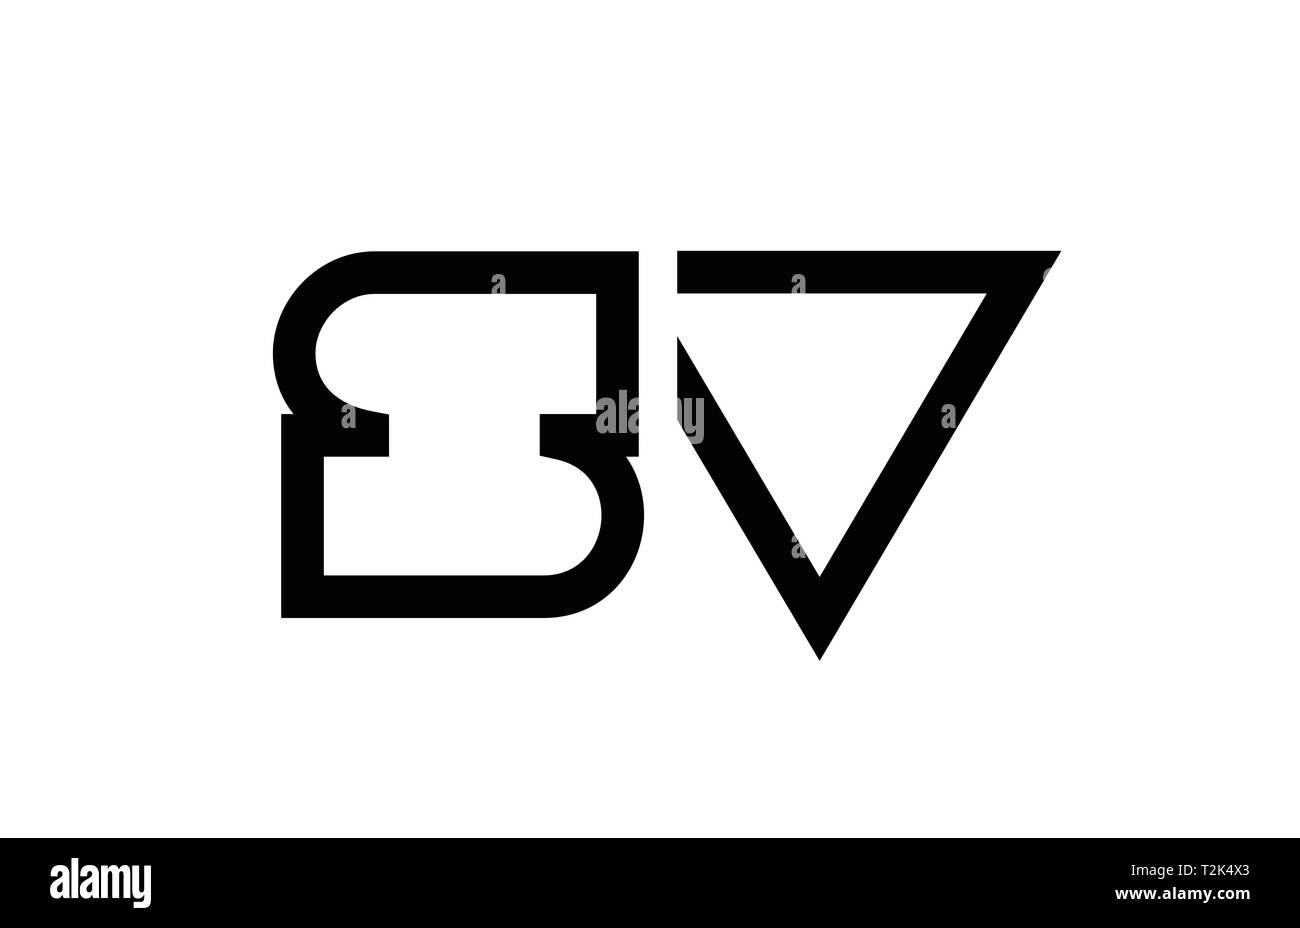 Schwarze und weiße Buchstaben logo Kombination sv s v Ausführung geeignet für ein Unternehmen oder ein Geschäft Stock Vektor